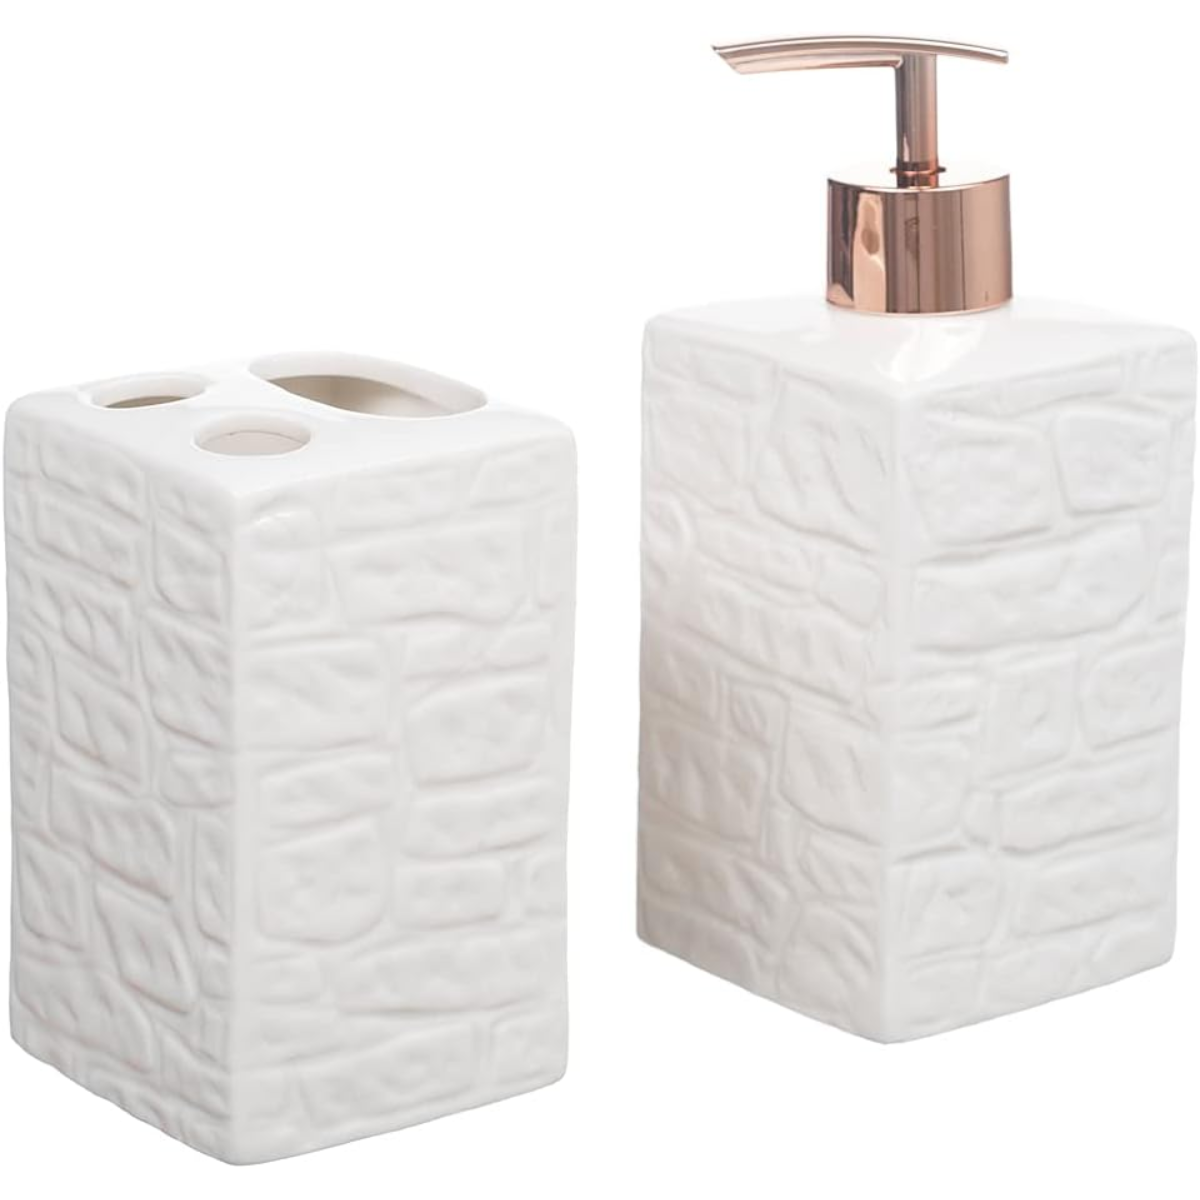 Kit Banheiro Ceramica Conjunto de Banheiro Lavabo Luxo 2peça:branco - 1